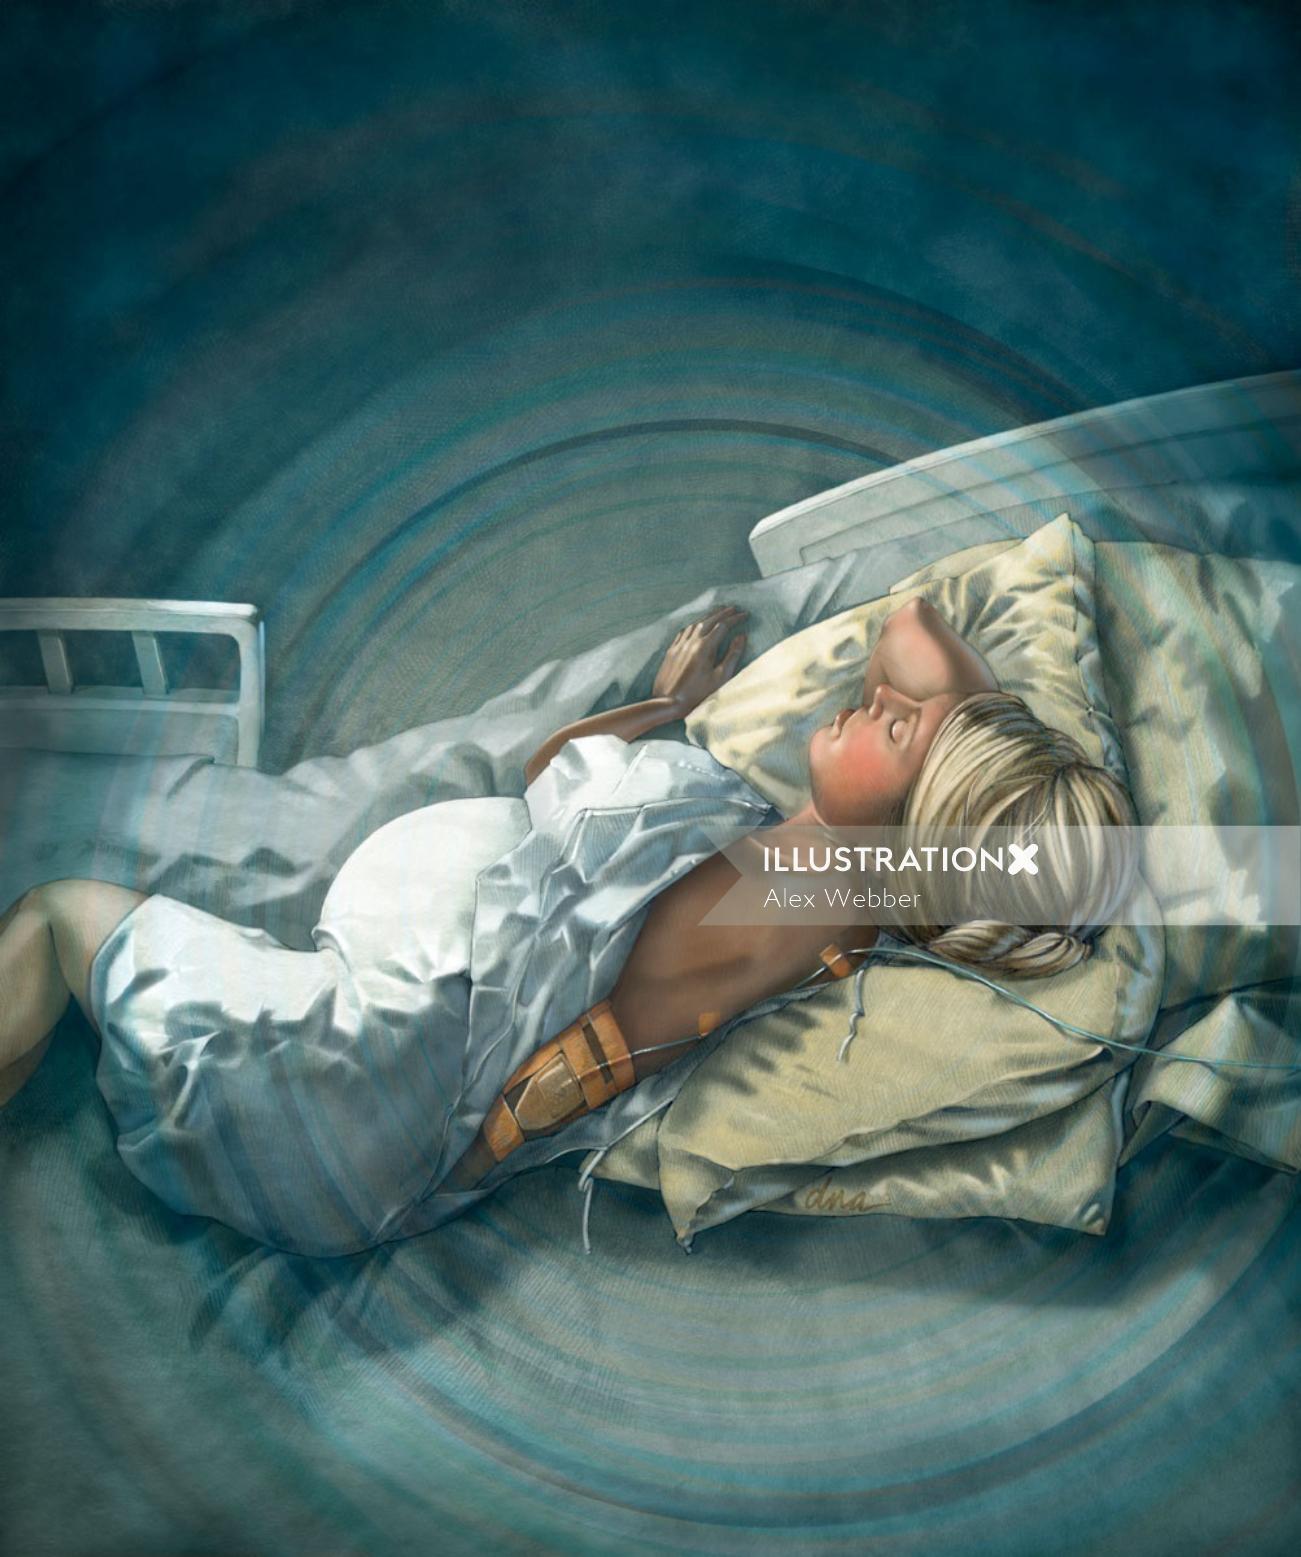 Uma ilustração de paciente grávida com epidural